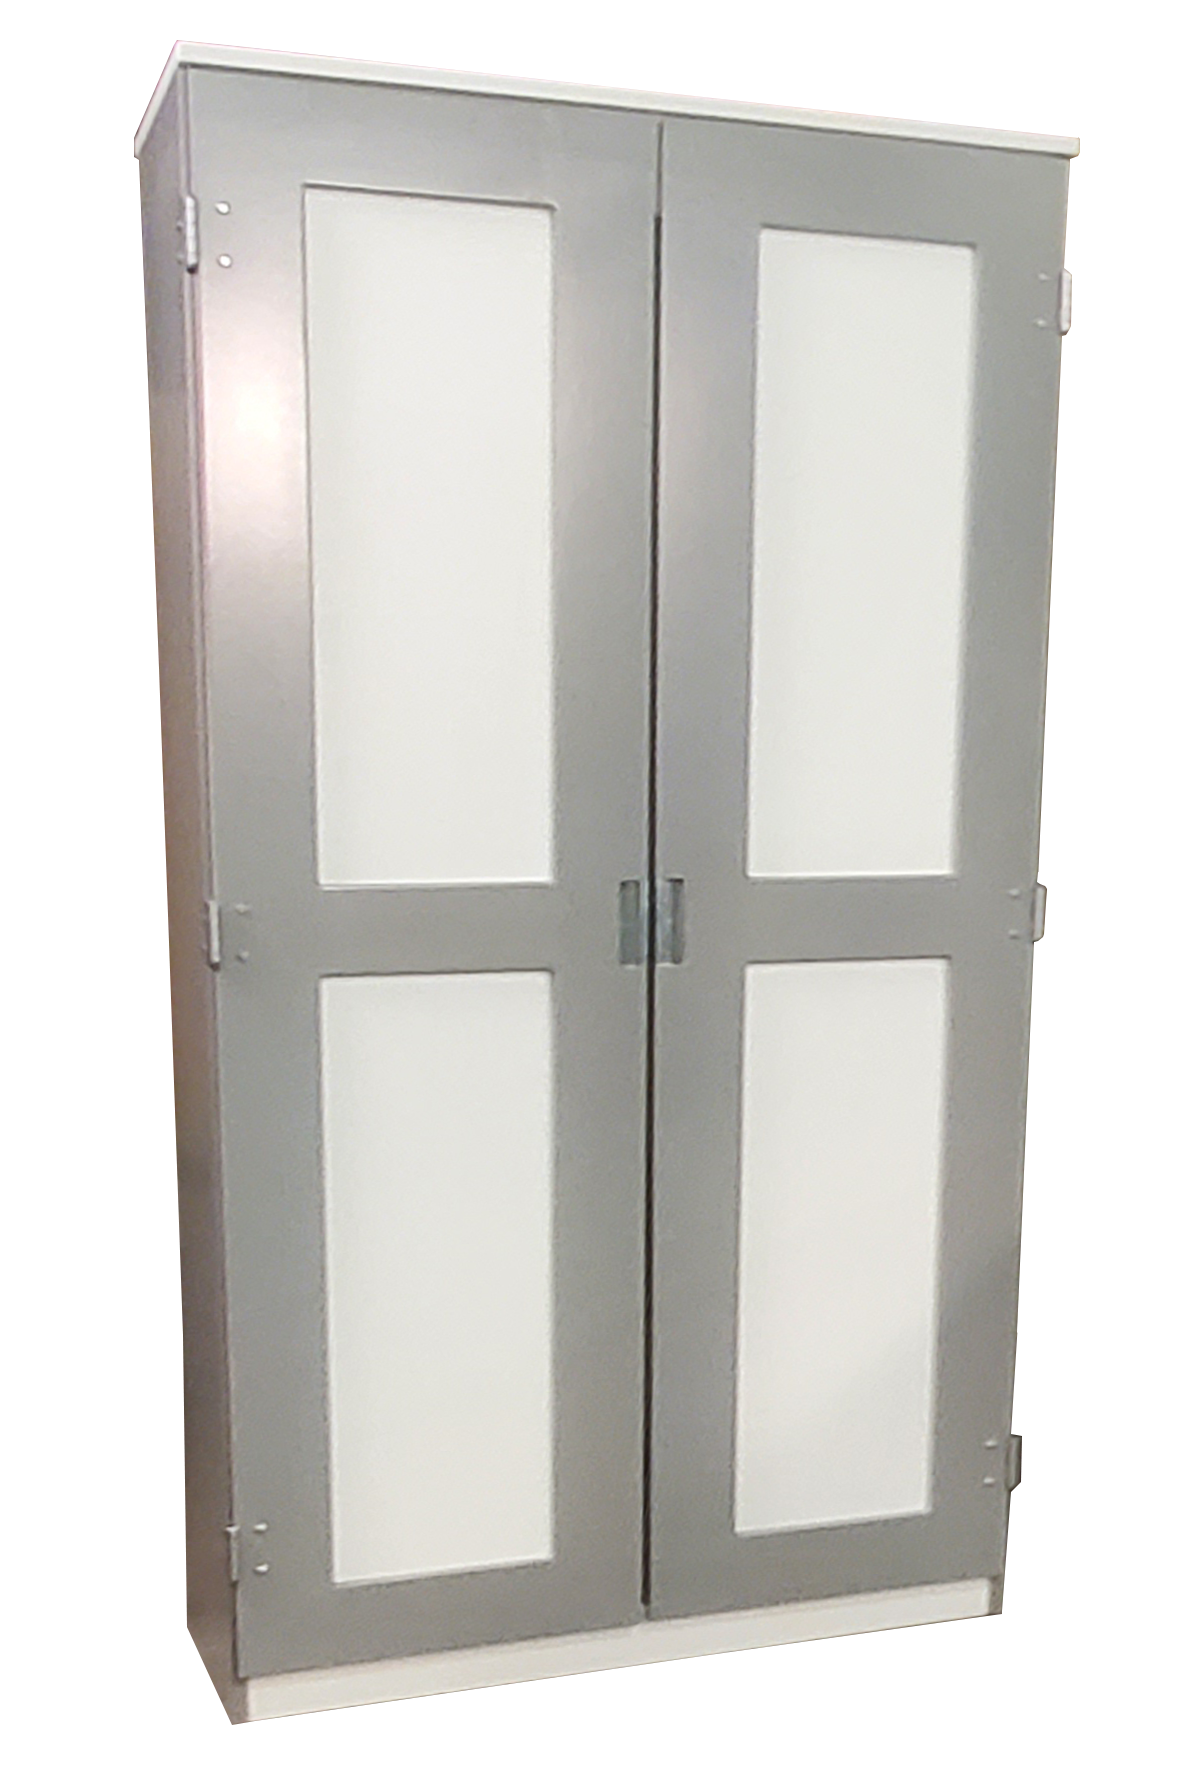 Urban Deluxe Double Door Wardrobe, Inset Panel Doors, 42"W